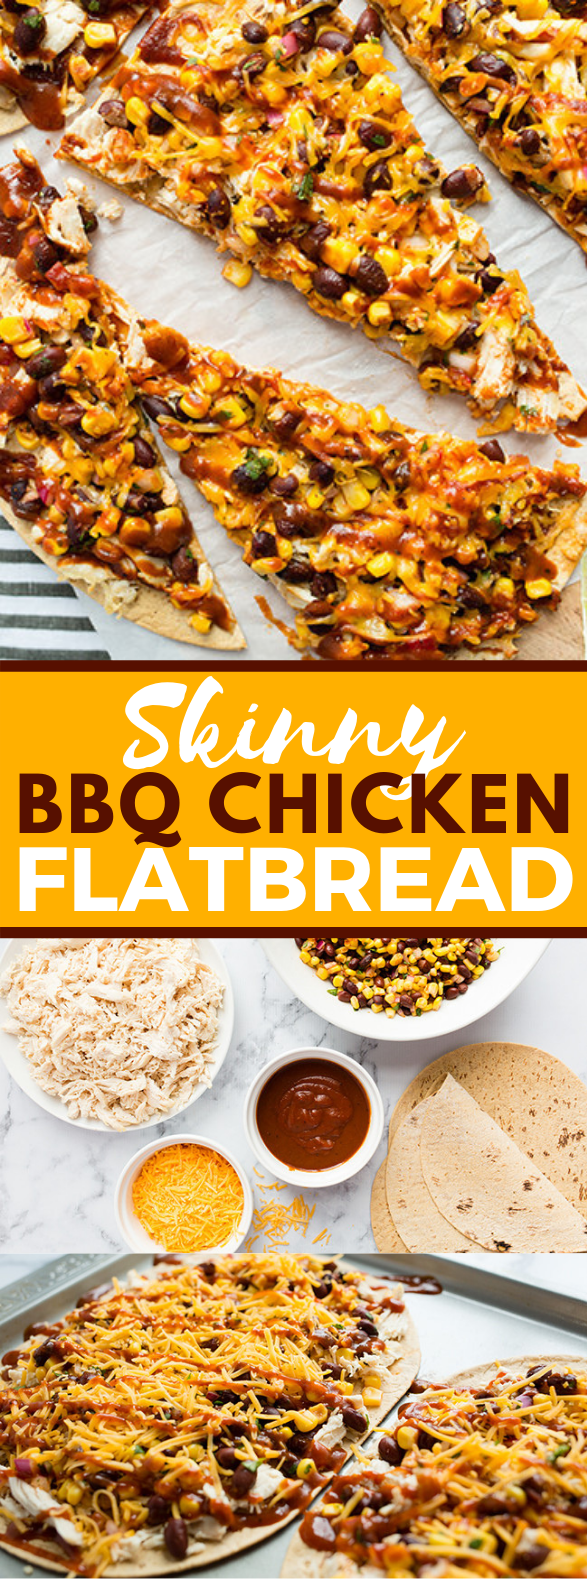 Skinny BBQ Chicken Flatbread #diet #healthychicken